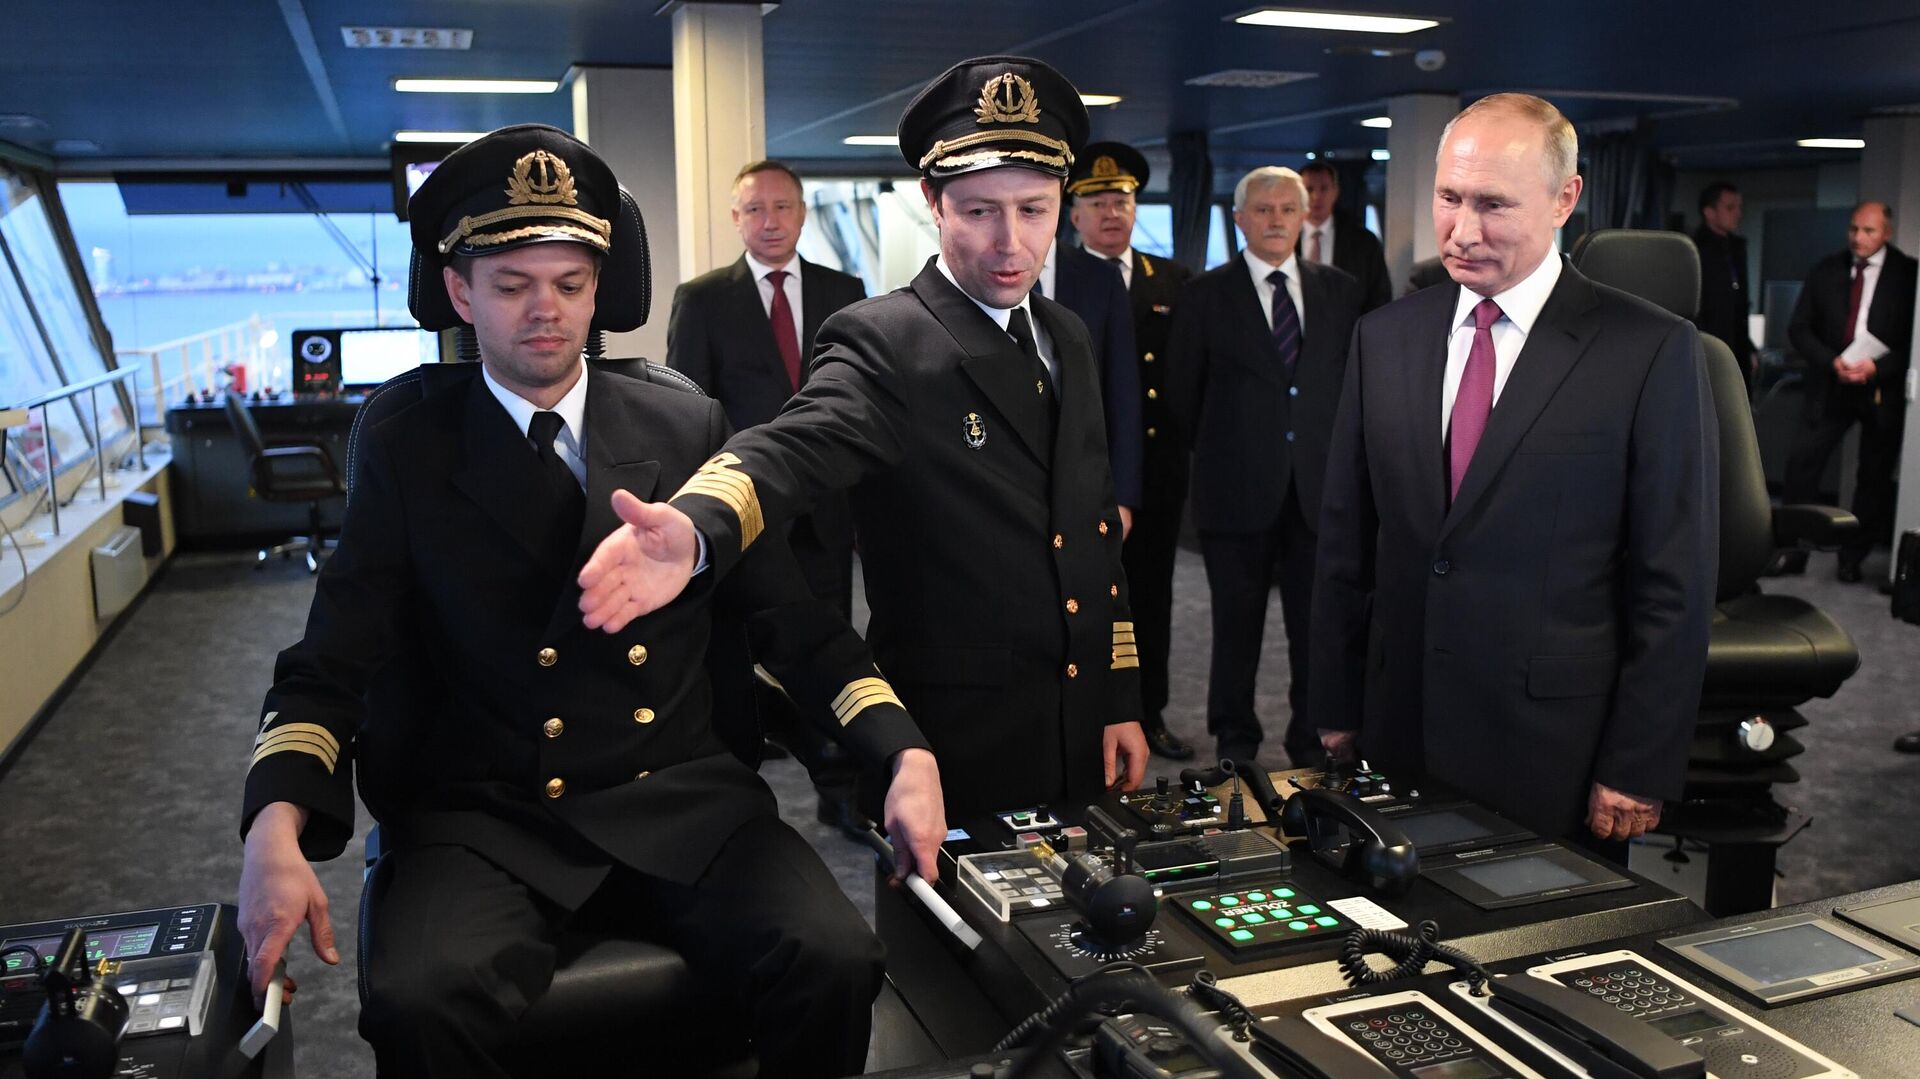 Фото Путина В Морской Форме